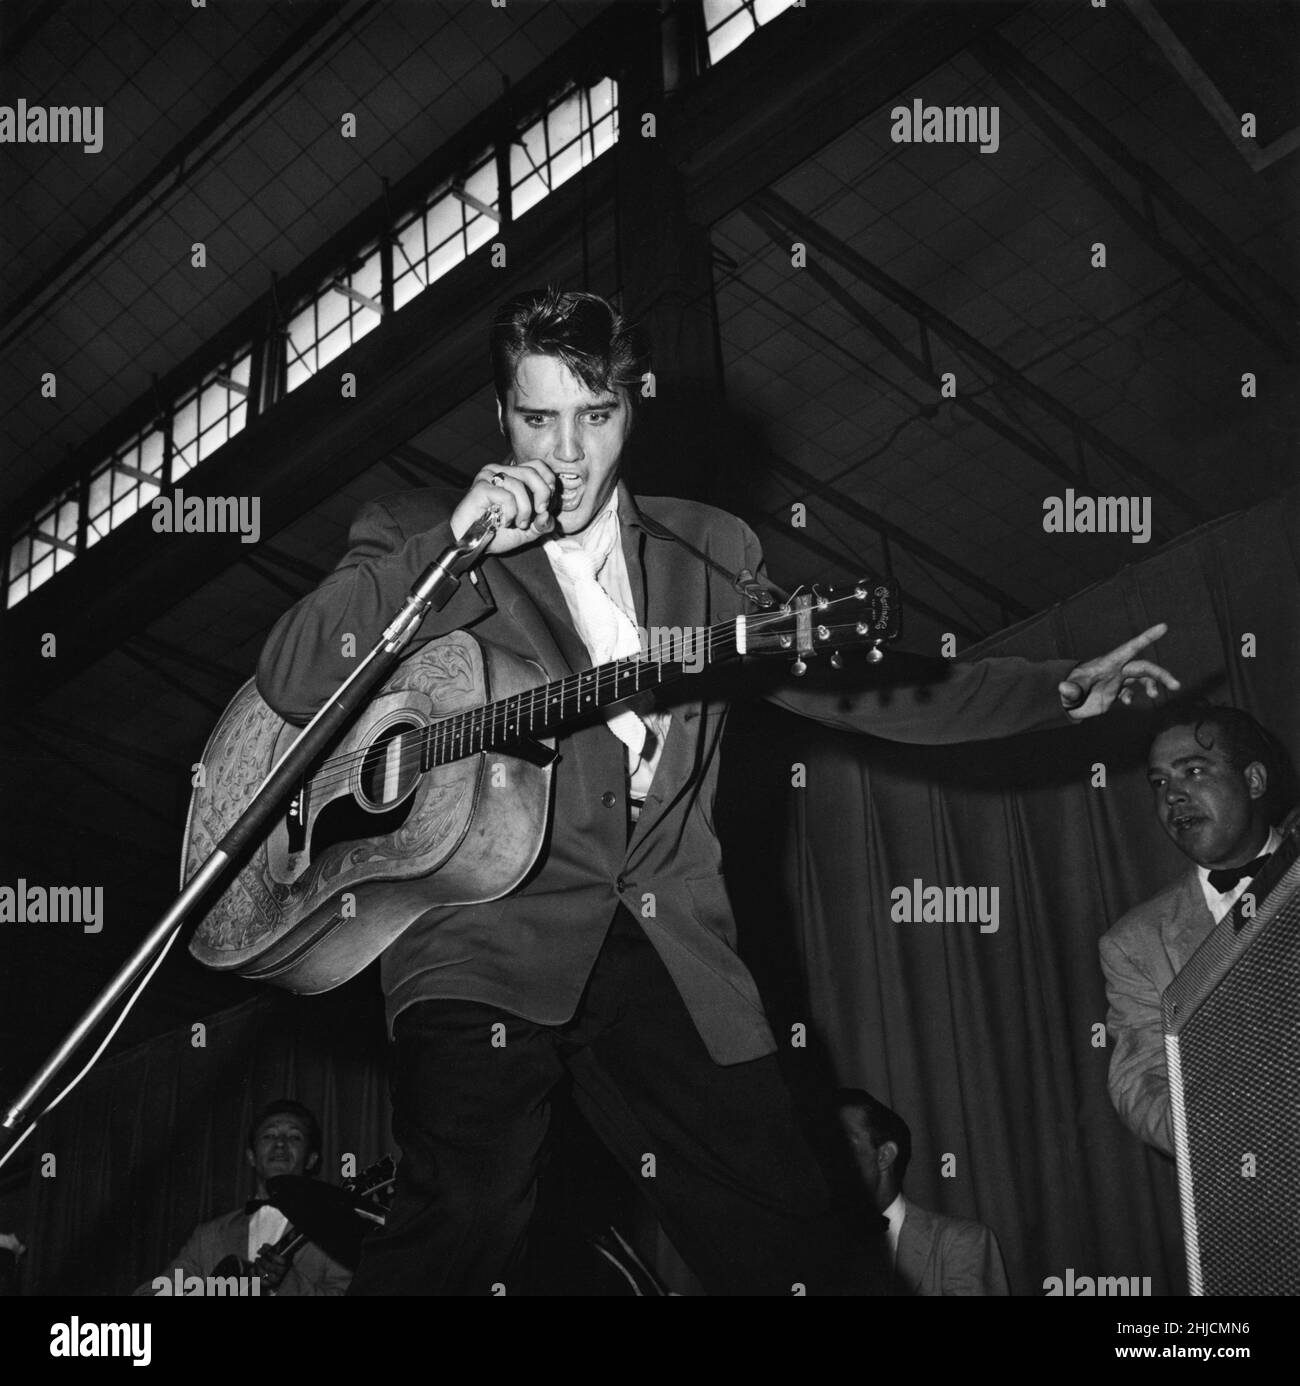 Il cantante americano Elvis Presley (1935 - 1977) suona con intensità di marchio a Tampa, Florida, nel 1956. Foto Stock